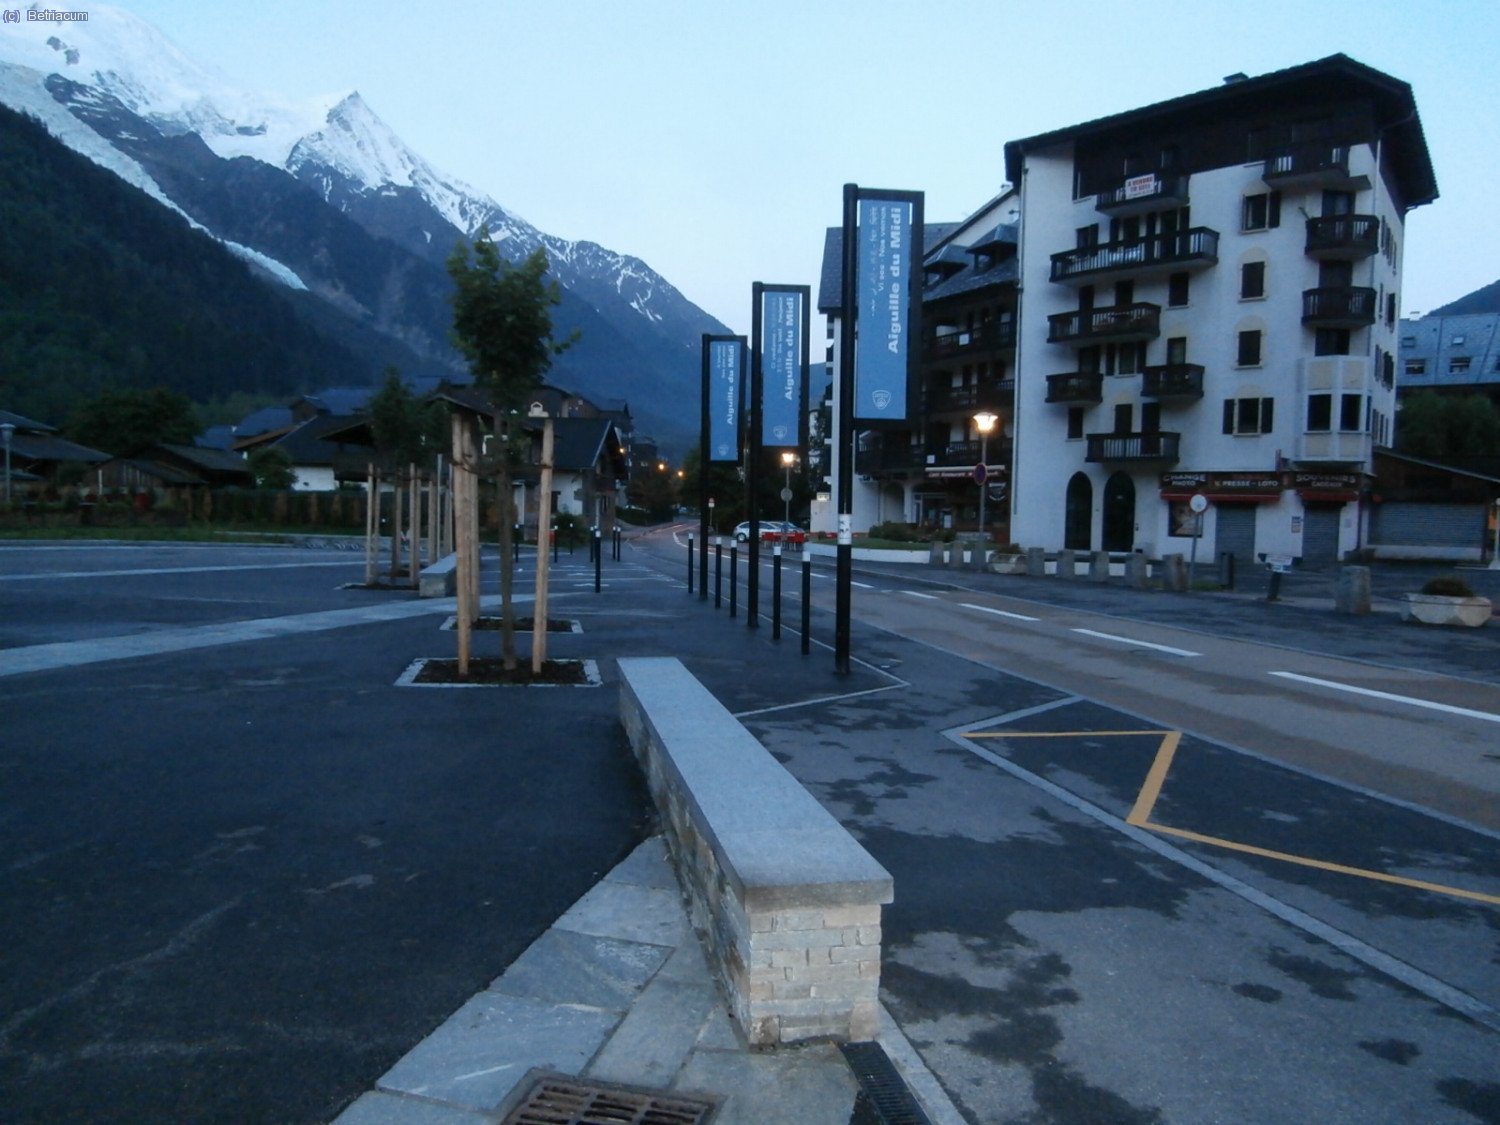 A les 6 h., a Chamonix, esperant el company davant del telefèric de l